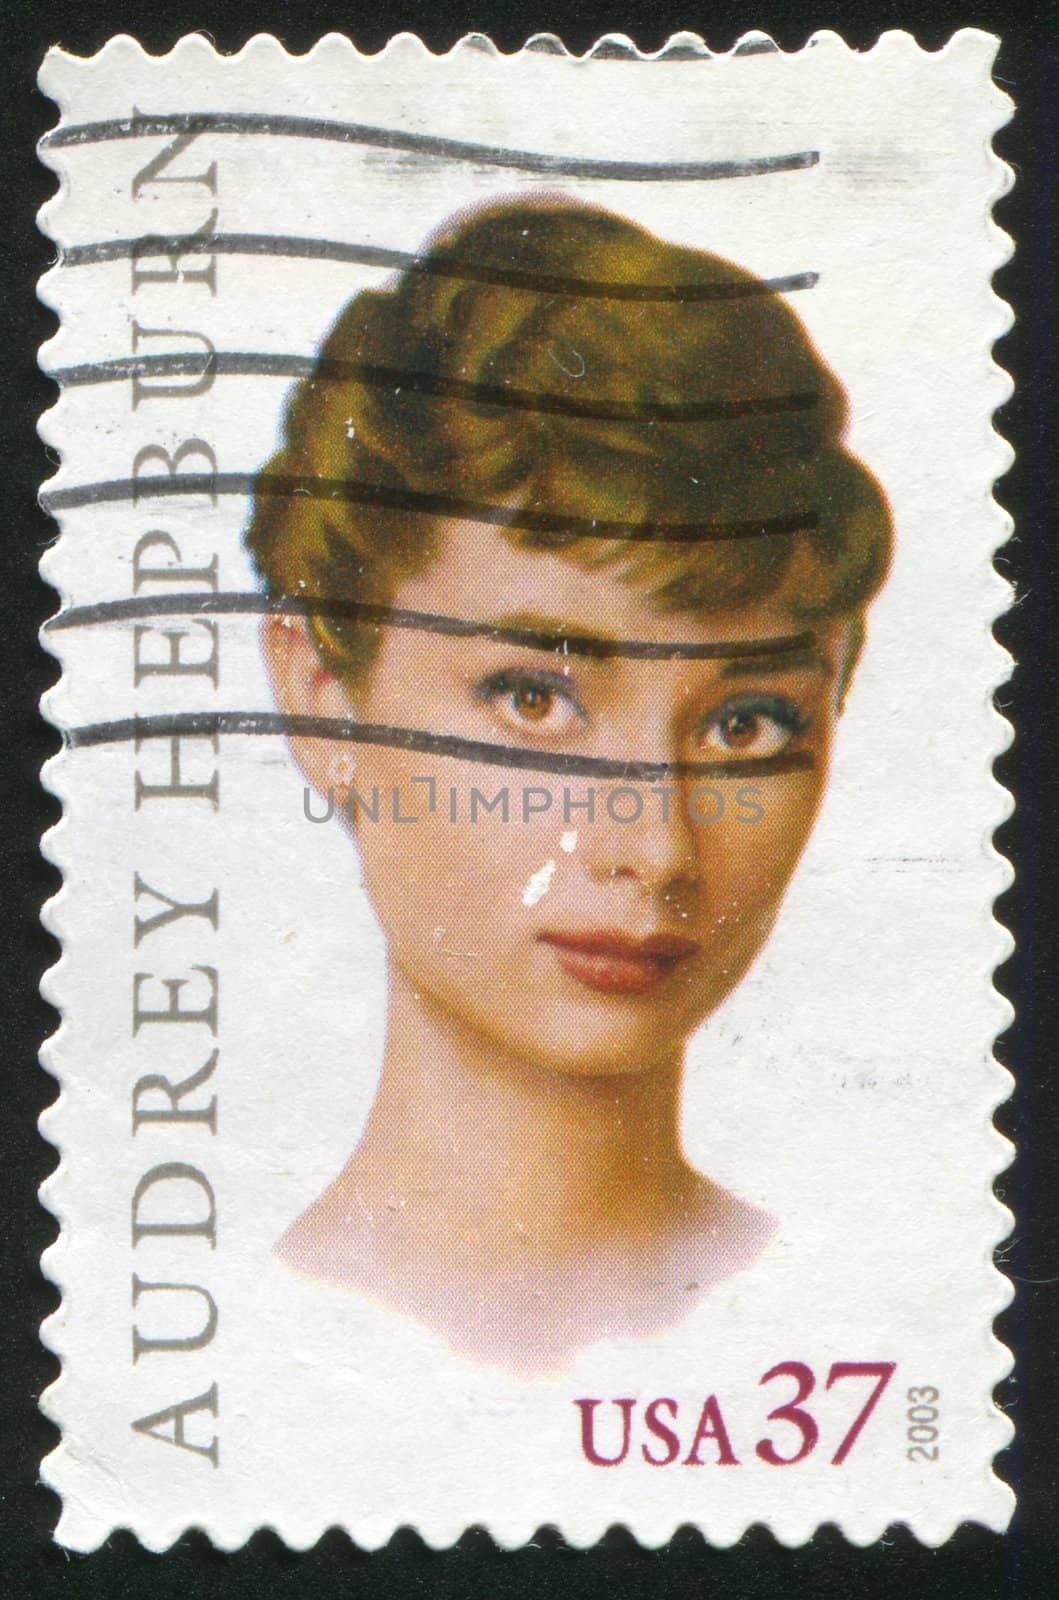 Audrey Hepburn by rook